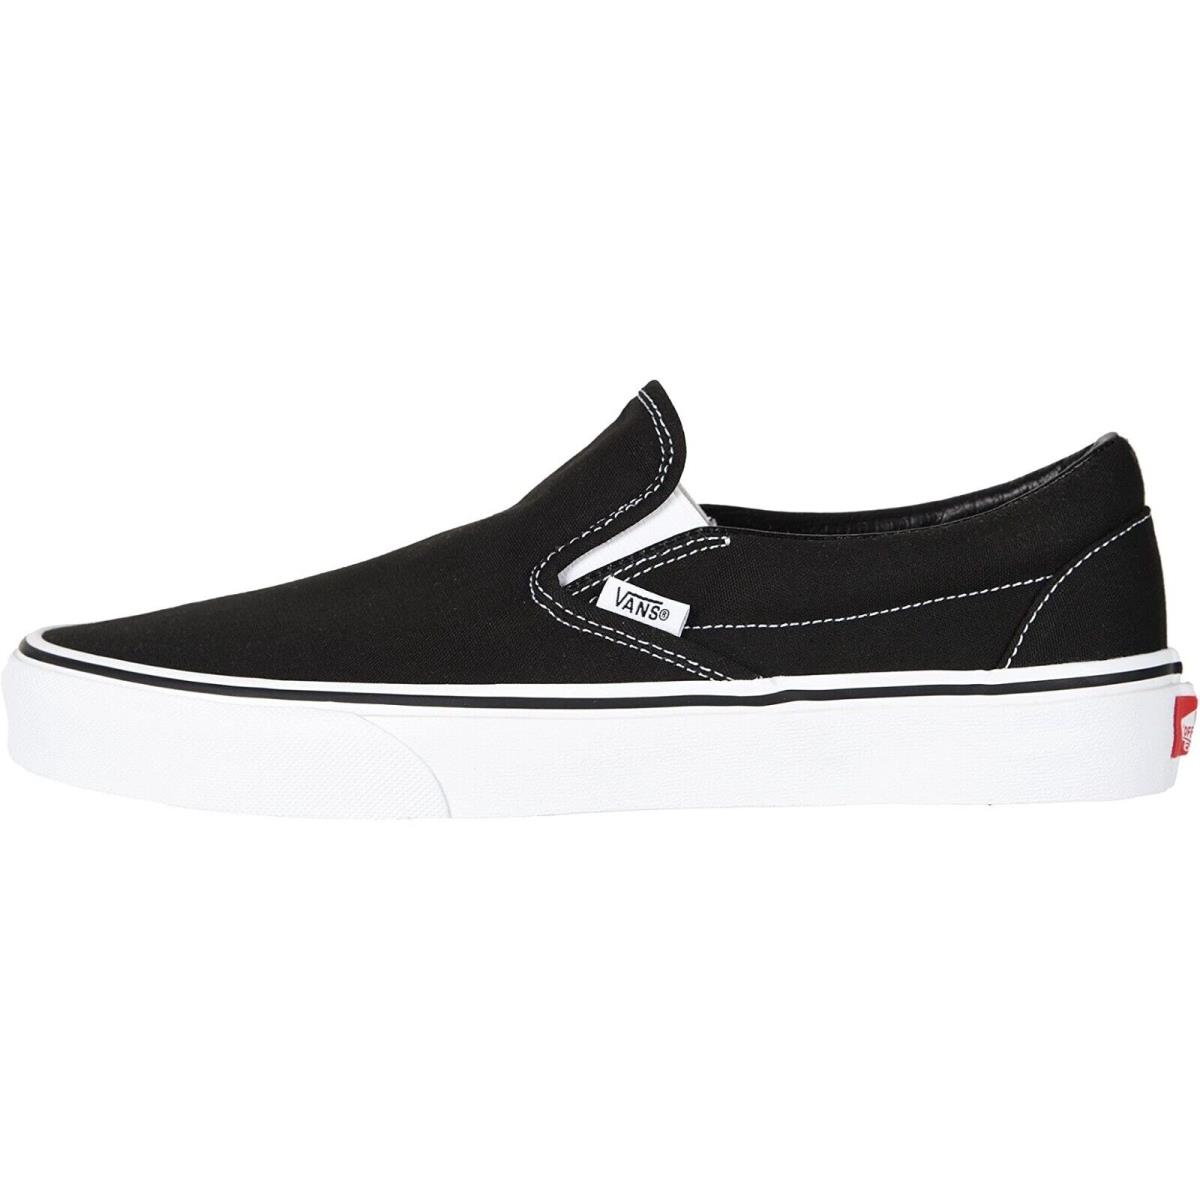 Vans Classic Slip-on Unisex Men Women Skate Shoes Canvas Sneakers Black/White